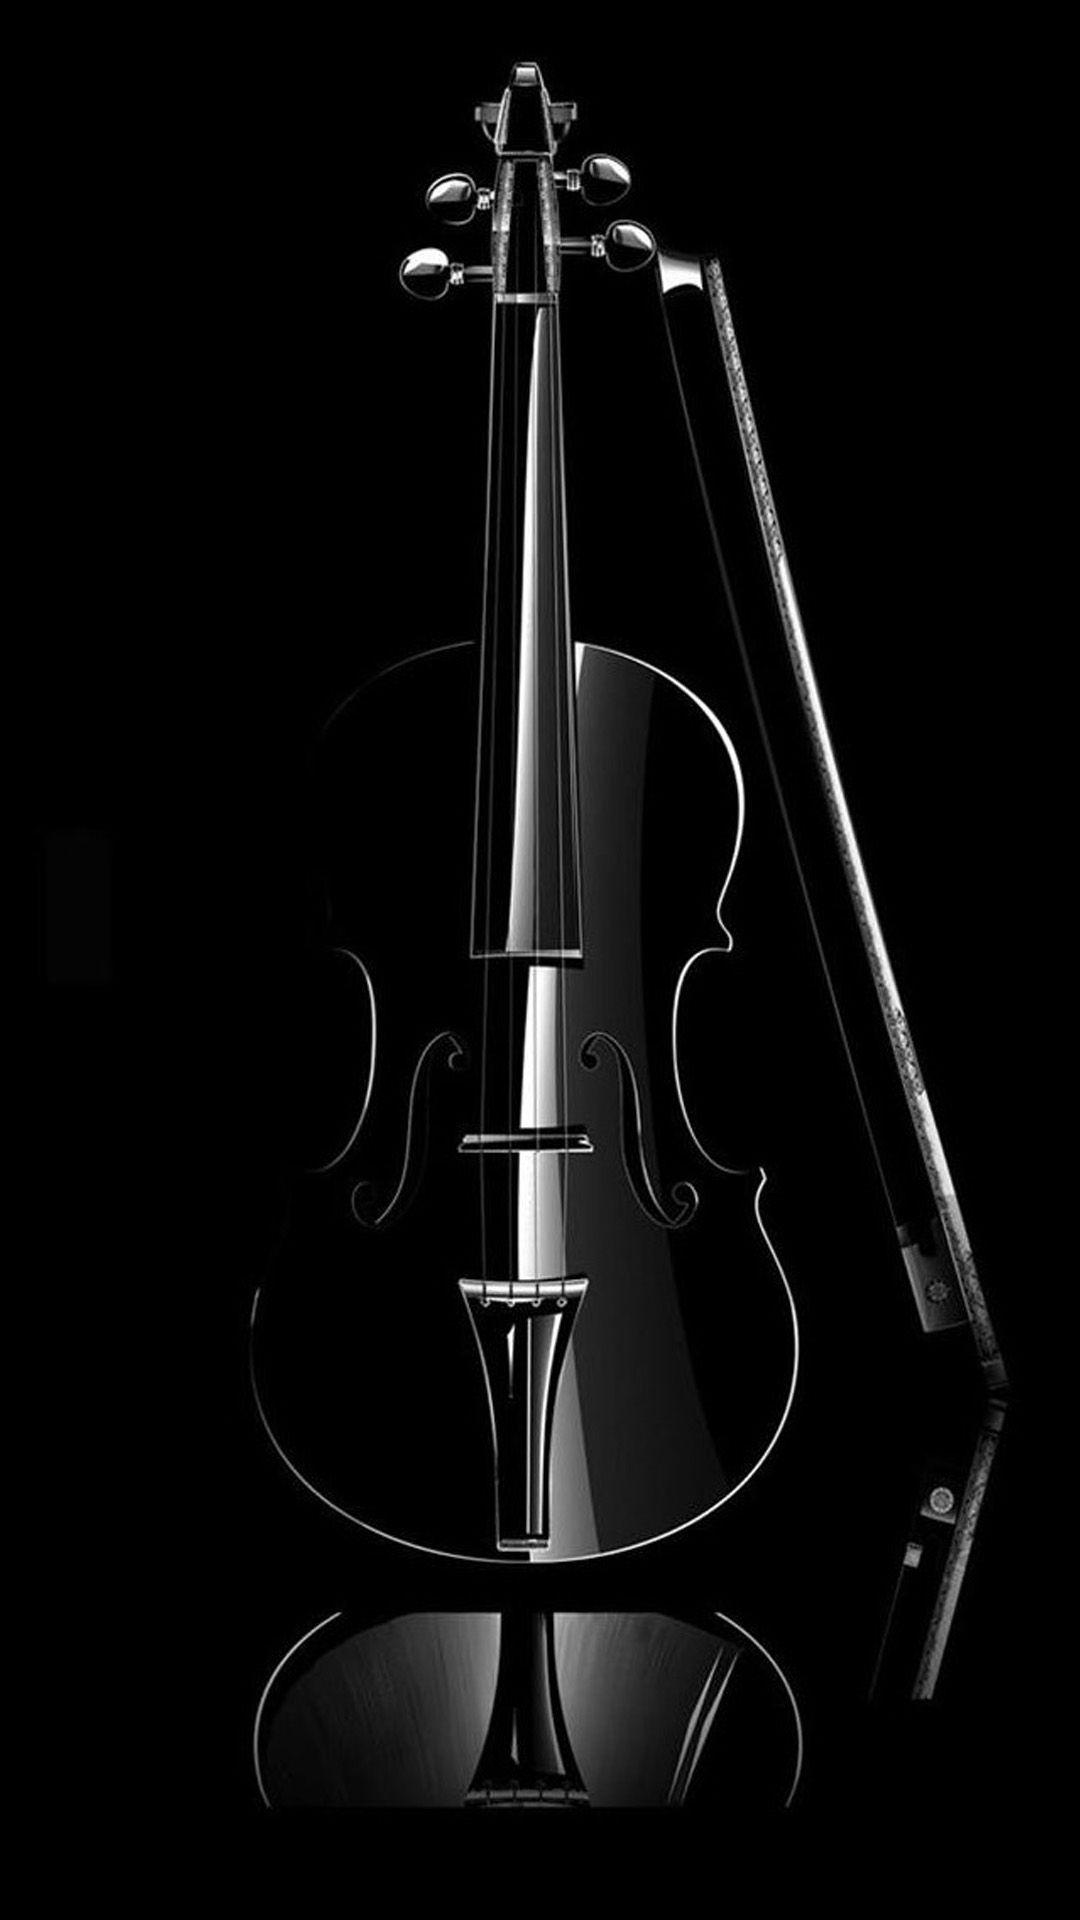 Elegant Cello Music Instrument #iPhone #plus #wallpaper. iPhone